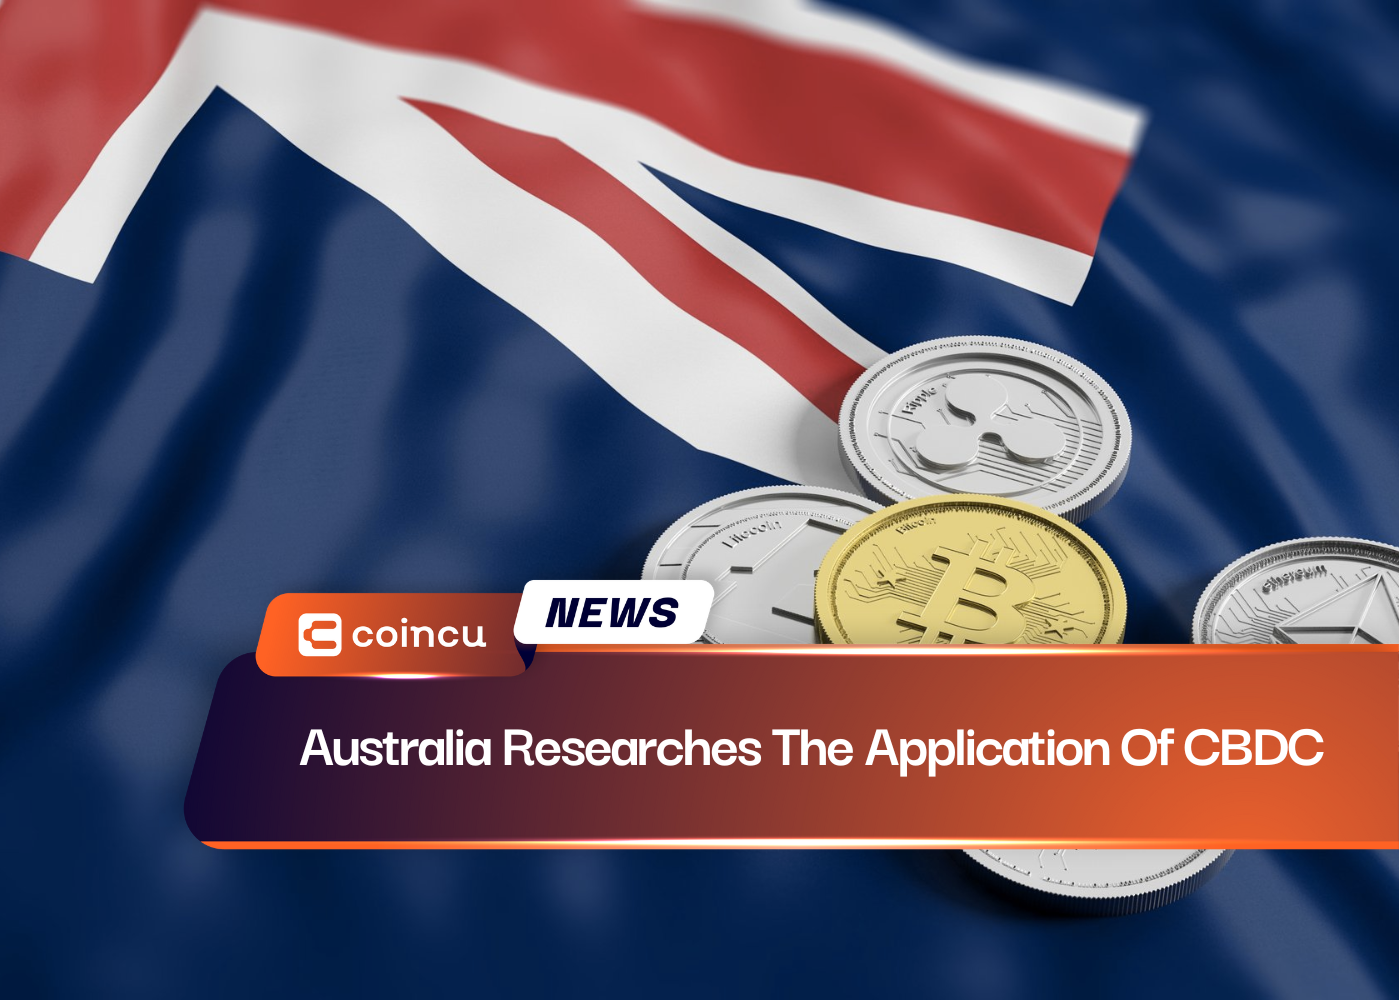 Australia Researches The Application Of CBDC